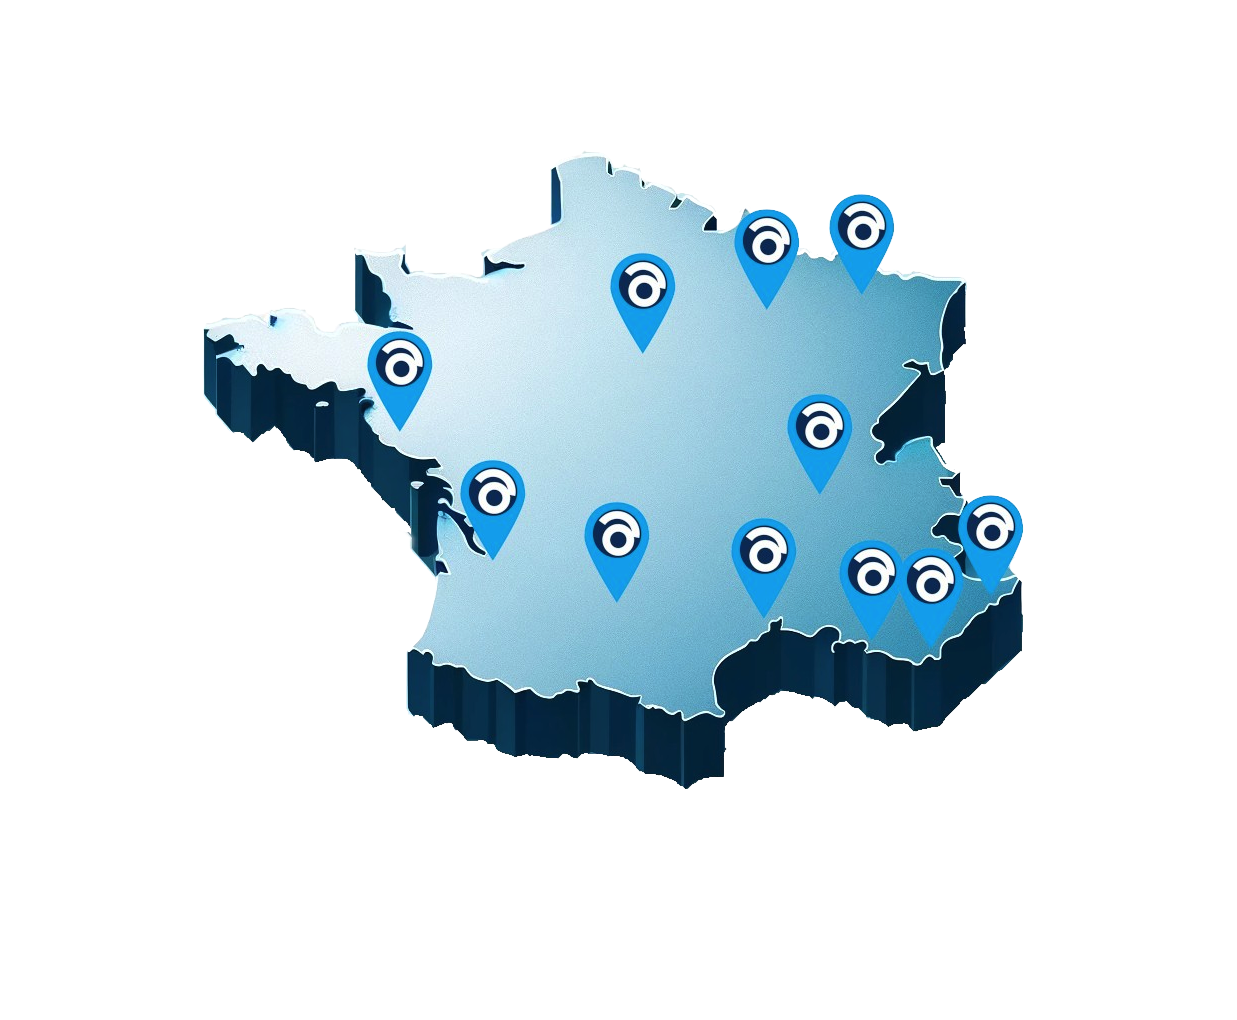 carte de France où nous trouver